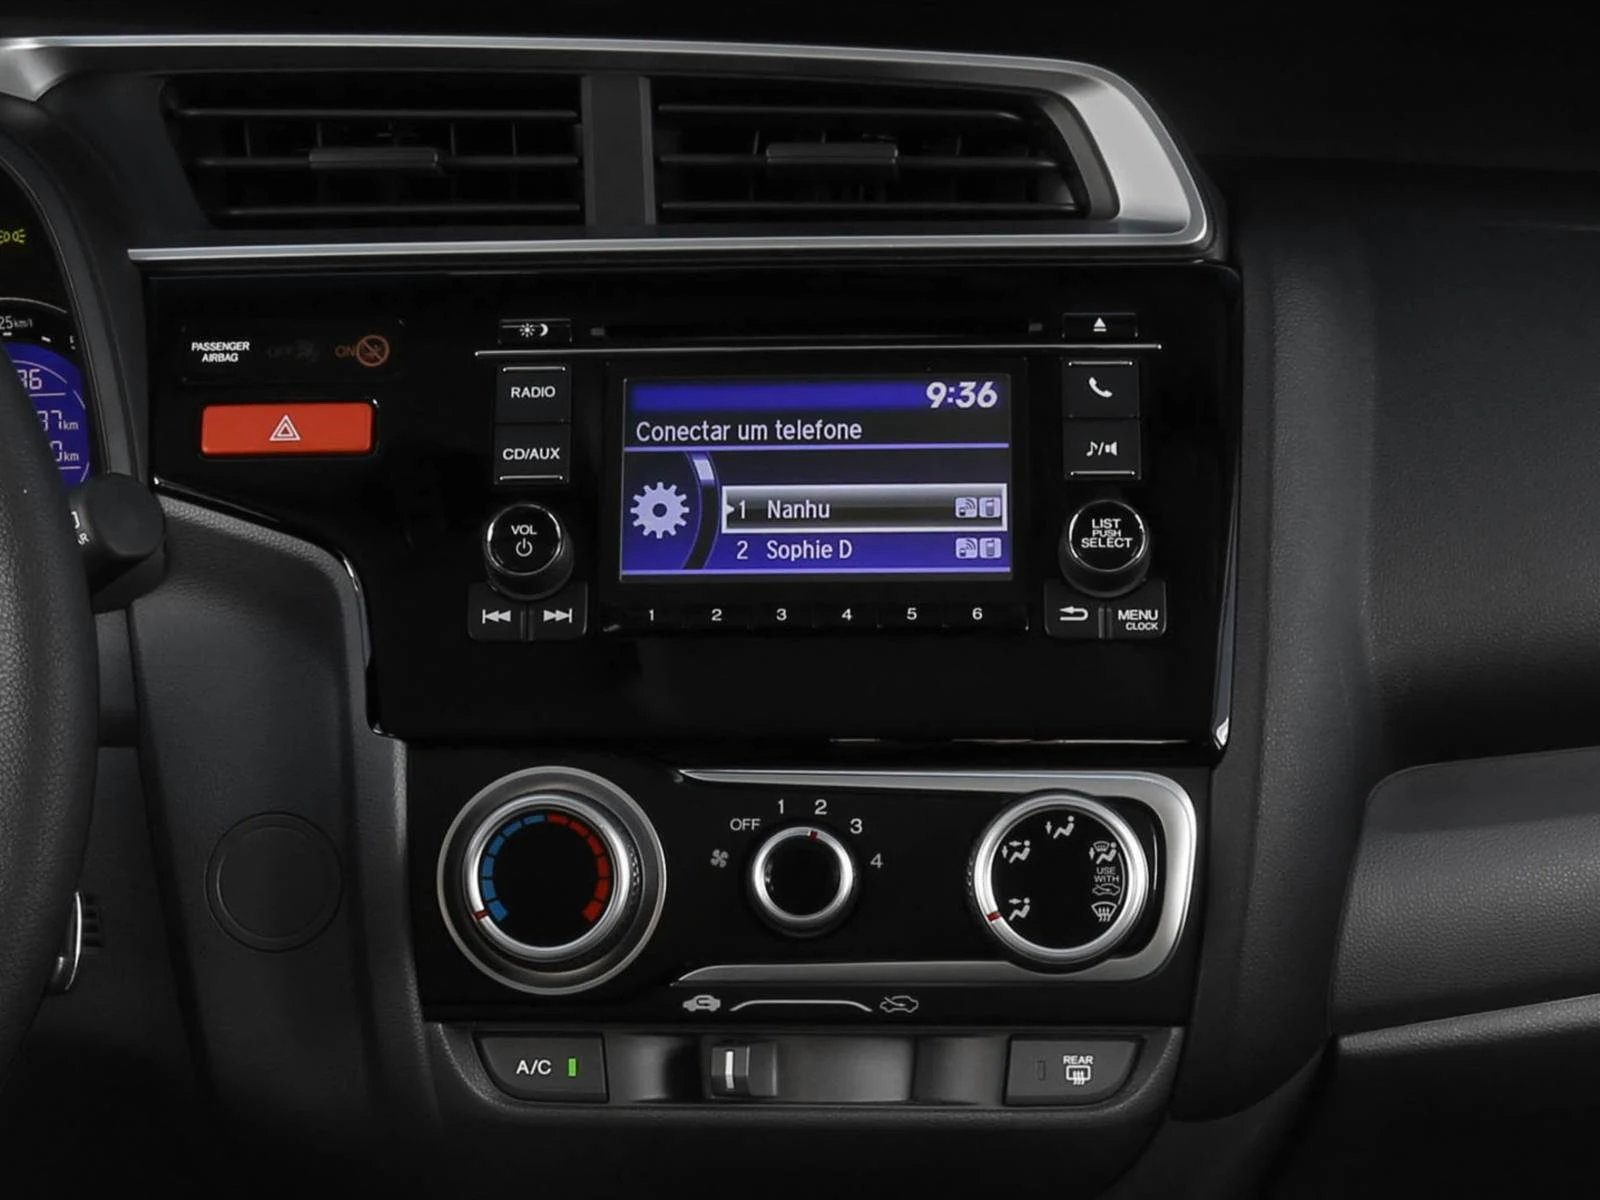 Novo Honda Fit 2015 - sistema multimídia